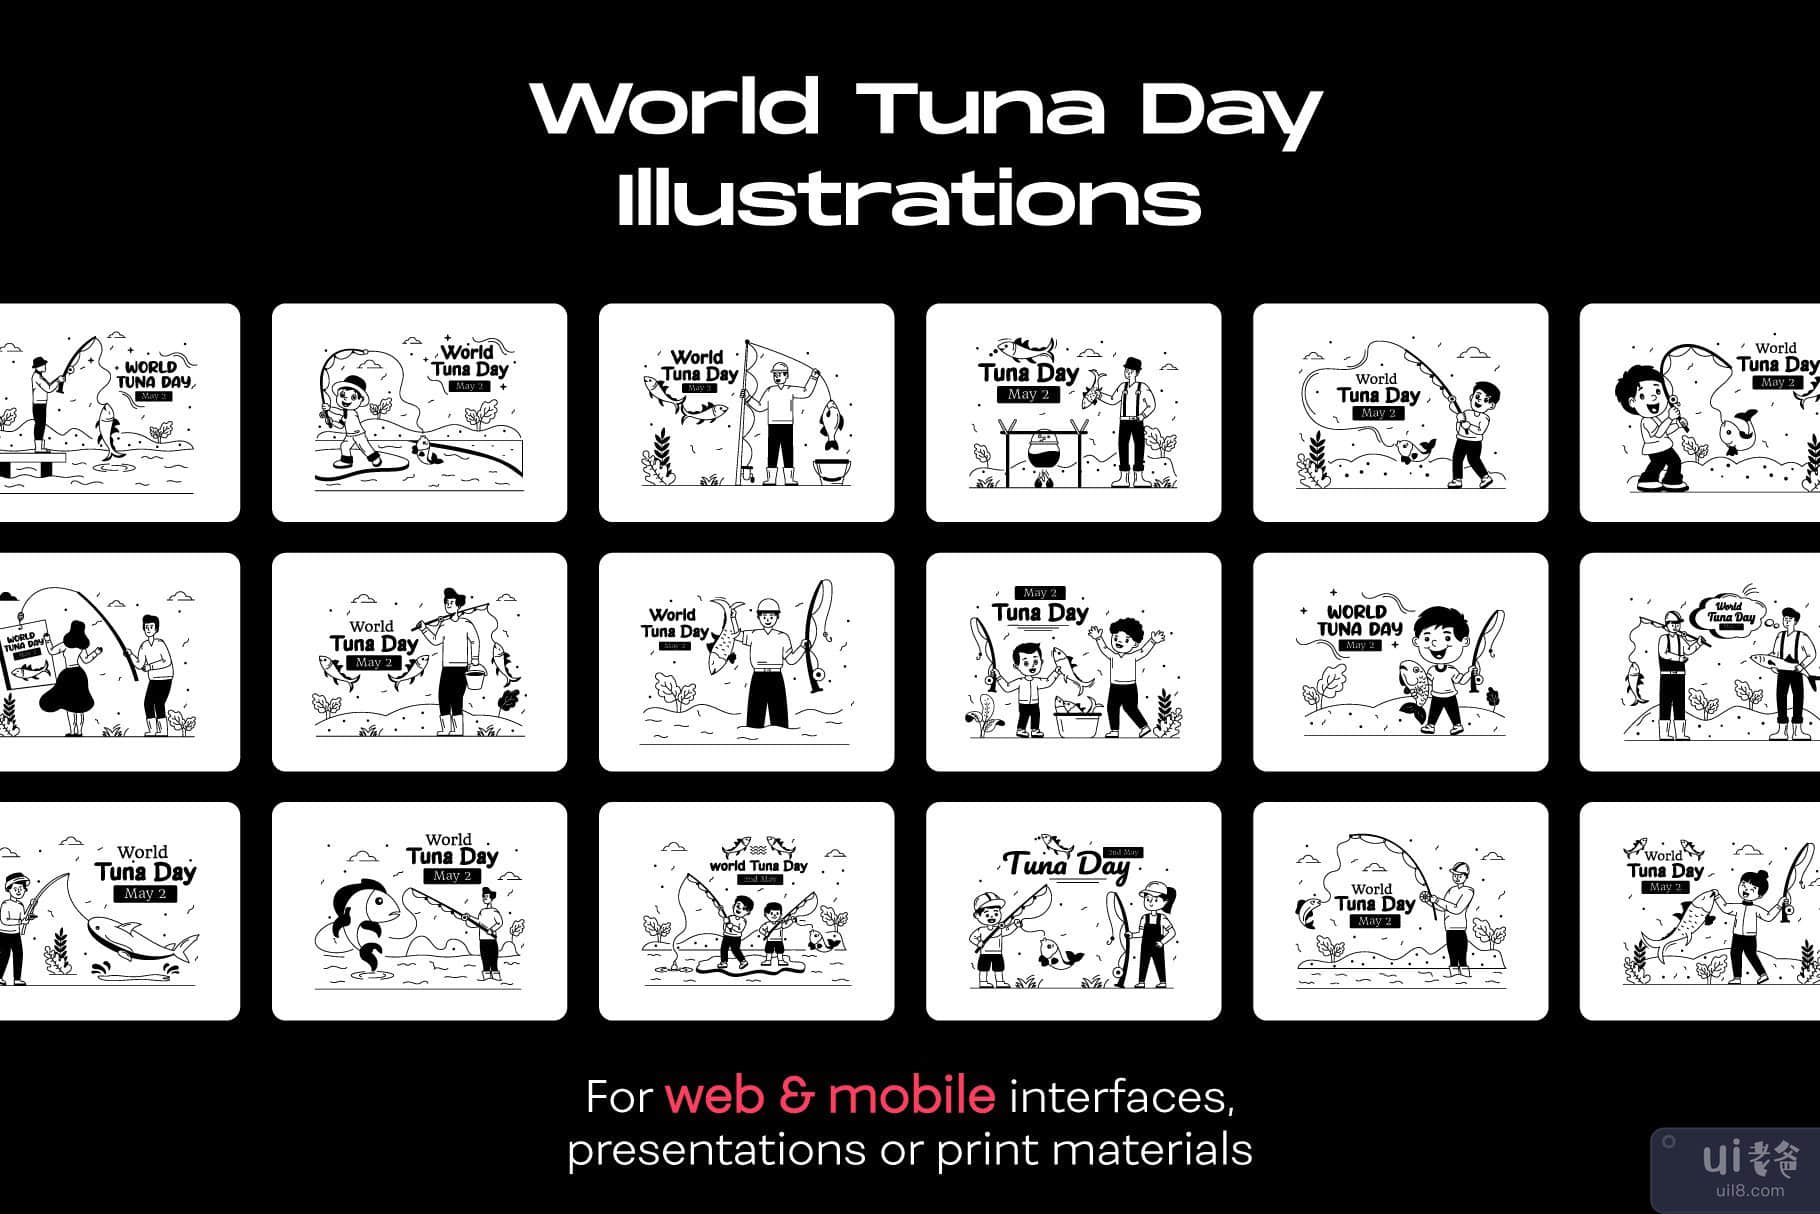 25 幅世界金枪鱼日插图(25 World Tuna Day illustrations)插图6